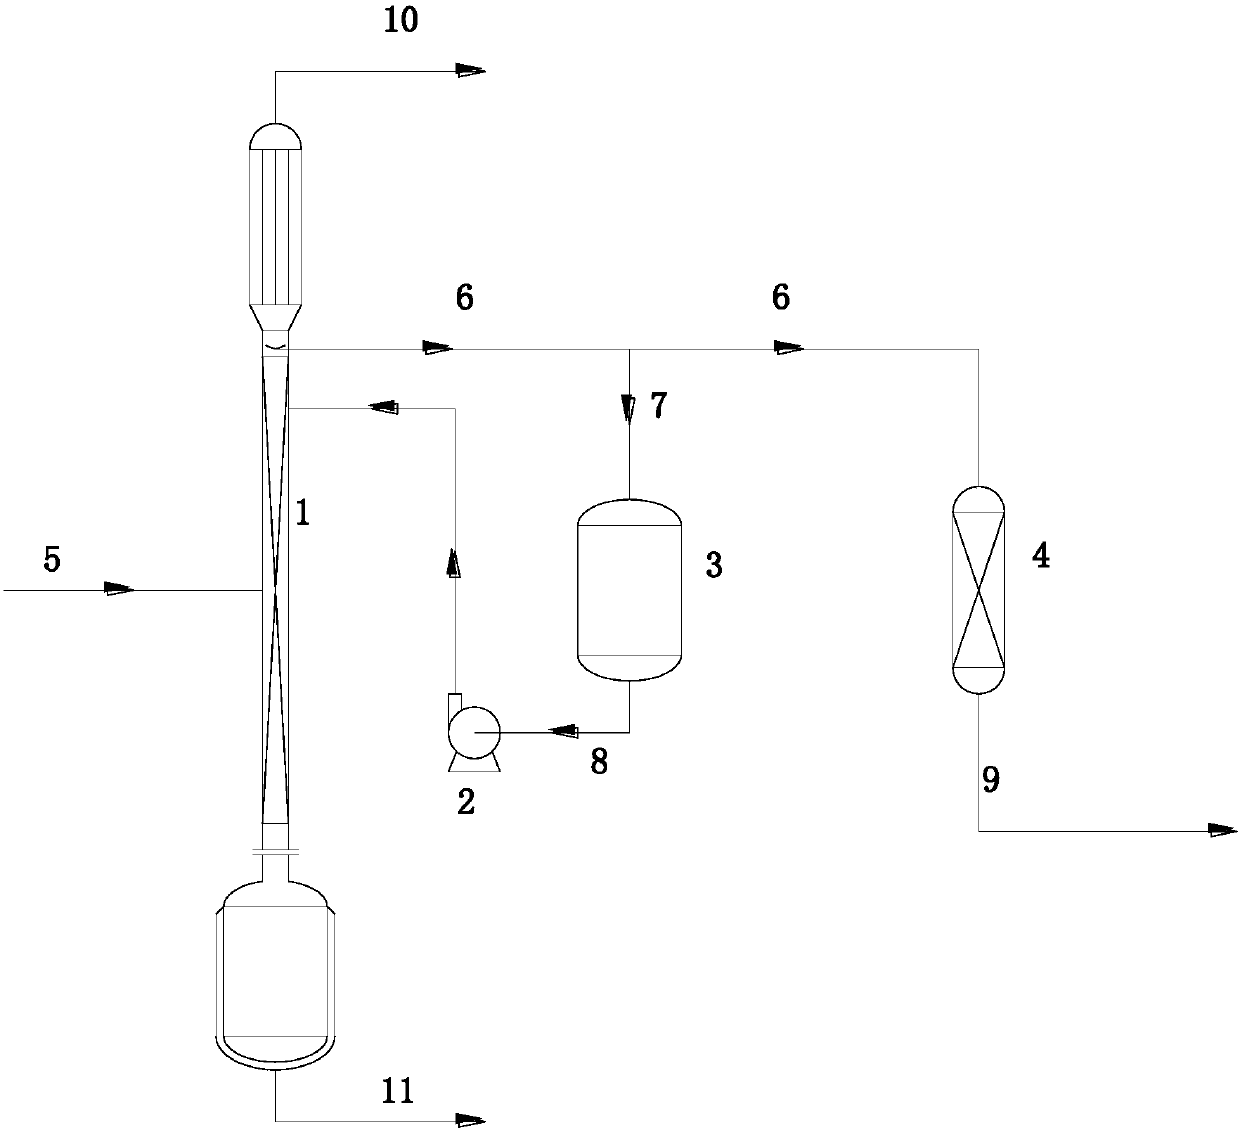 Purification method of industrial grade hexafluoroethane